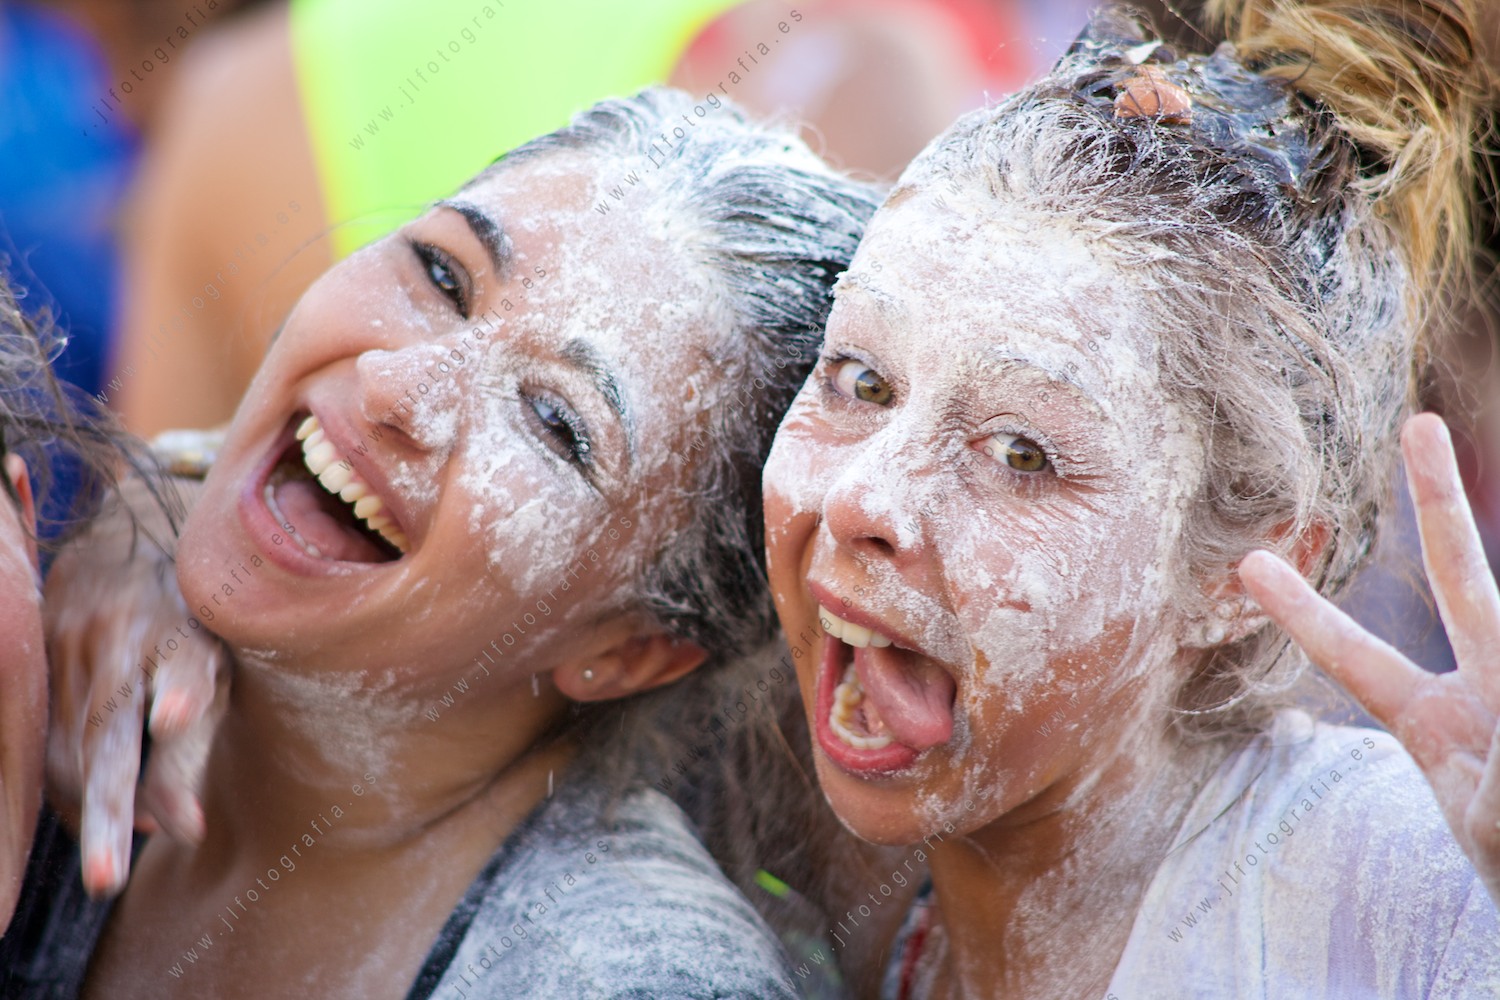 Aste Nagusia de Bilbao, dos chicas embadurnadas de harina, sonrien tras el chupinazo